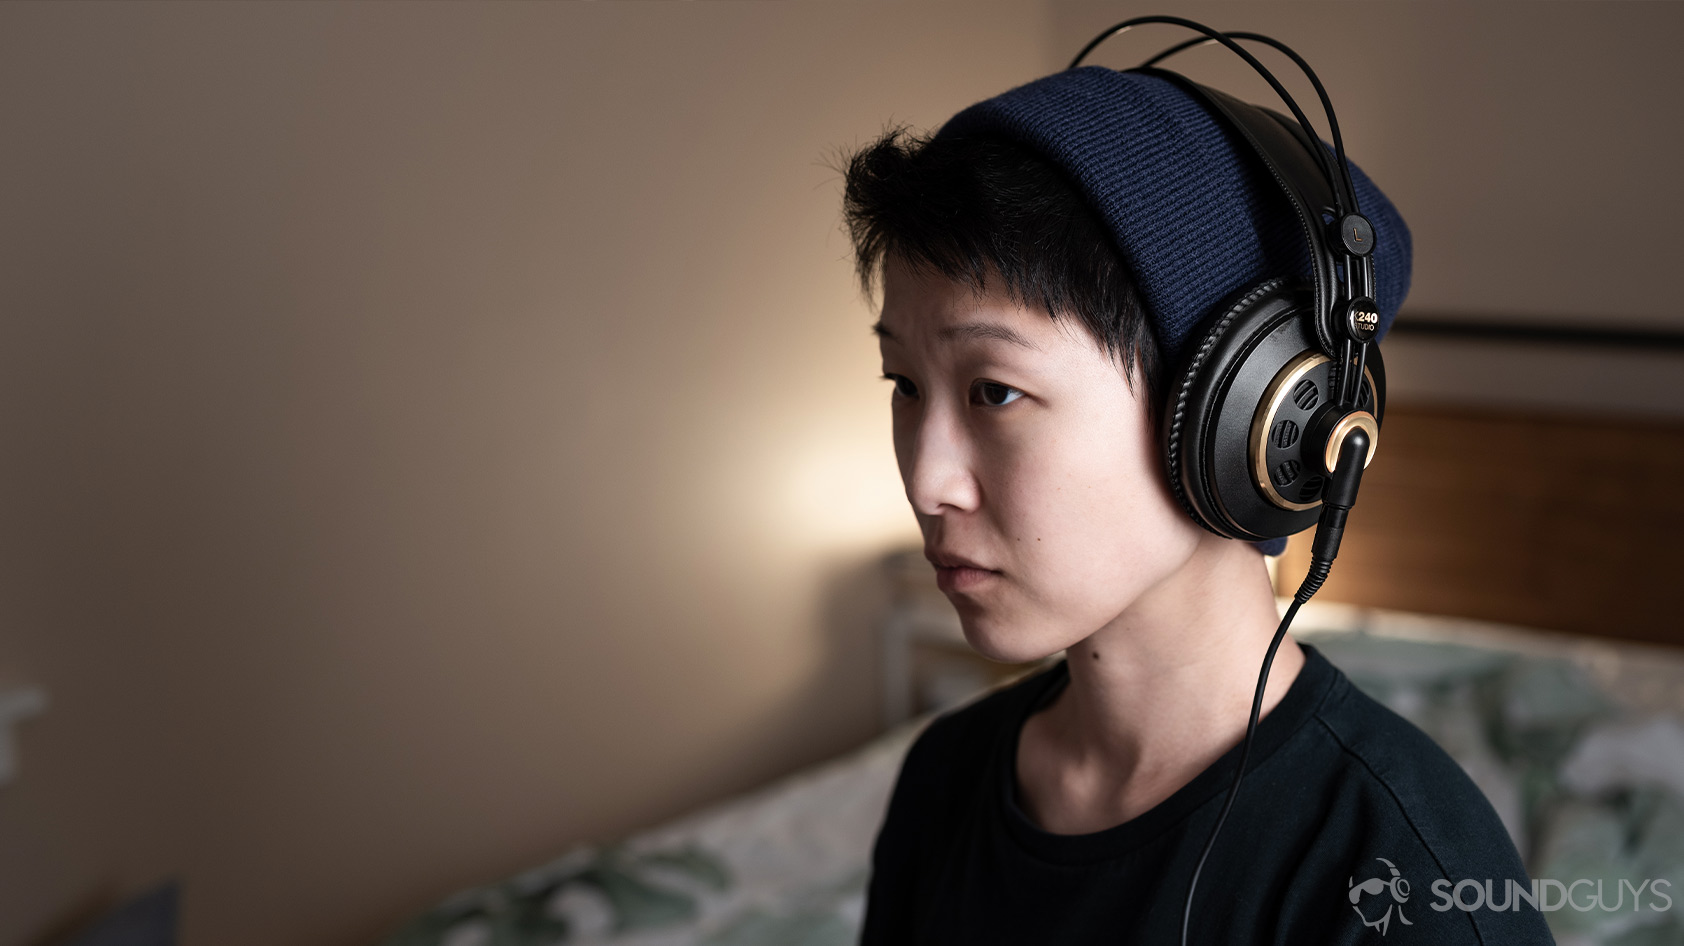 AKG K 240 Studio review (w/ gaming & EQ) : r/headphones